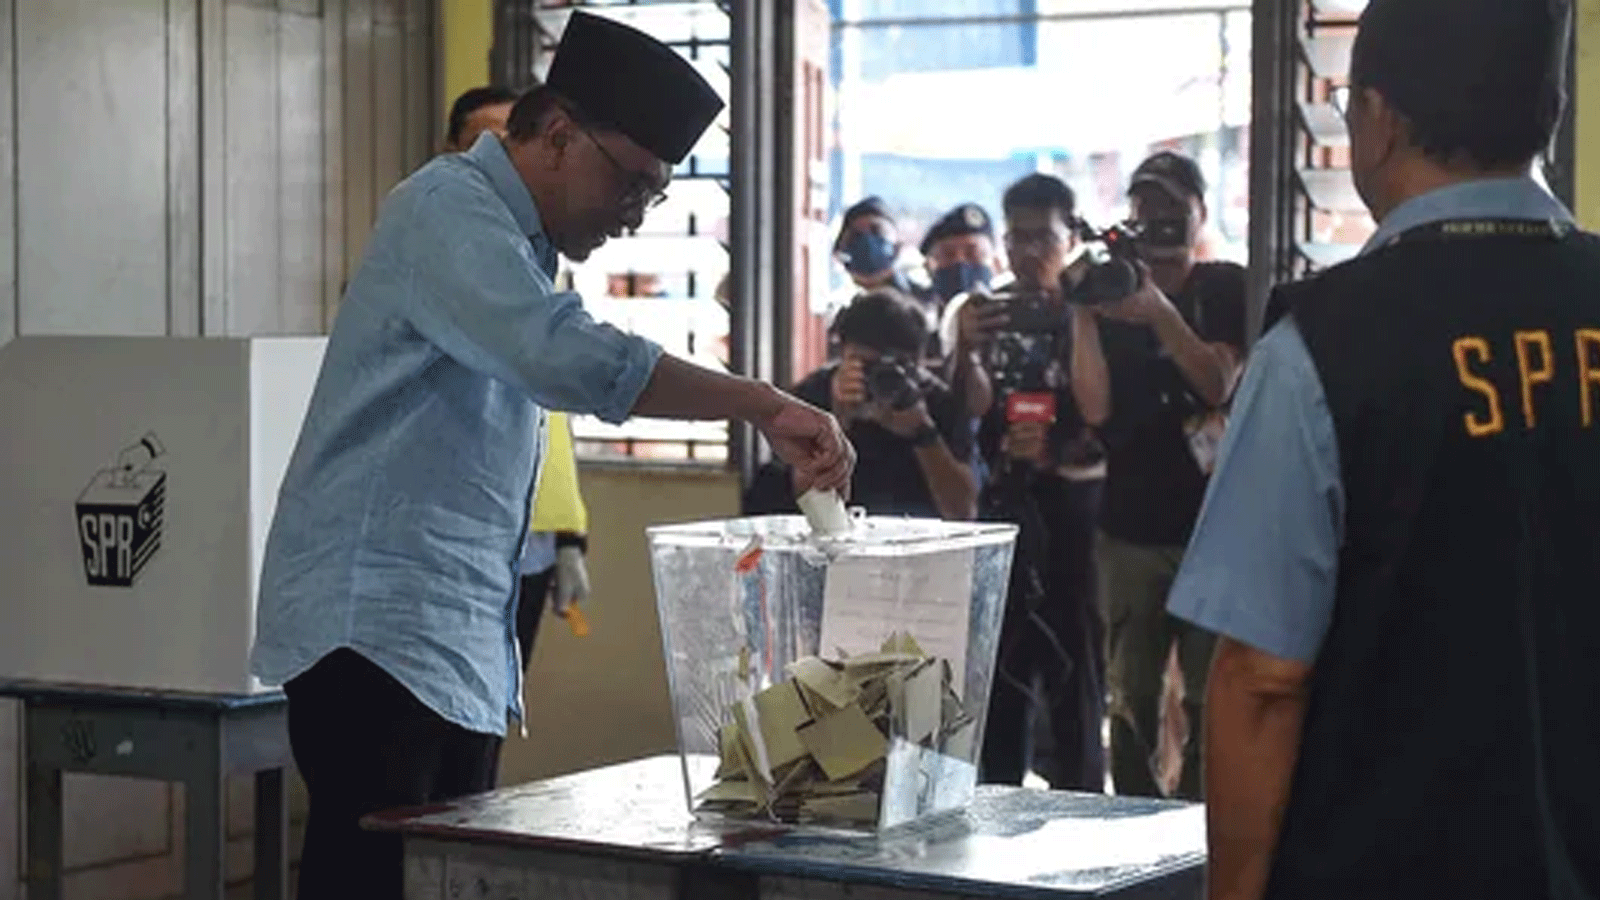  زعيم المعارضة الماليزية، أنور إبراهيم، رئيس باكاتان هارابان (تحالف الأمل) يدلي بصوته في مركز اقتراع خلال الانتخابات العامة في بيرماتانغ باوه.